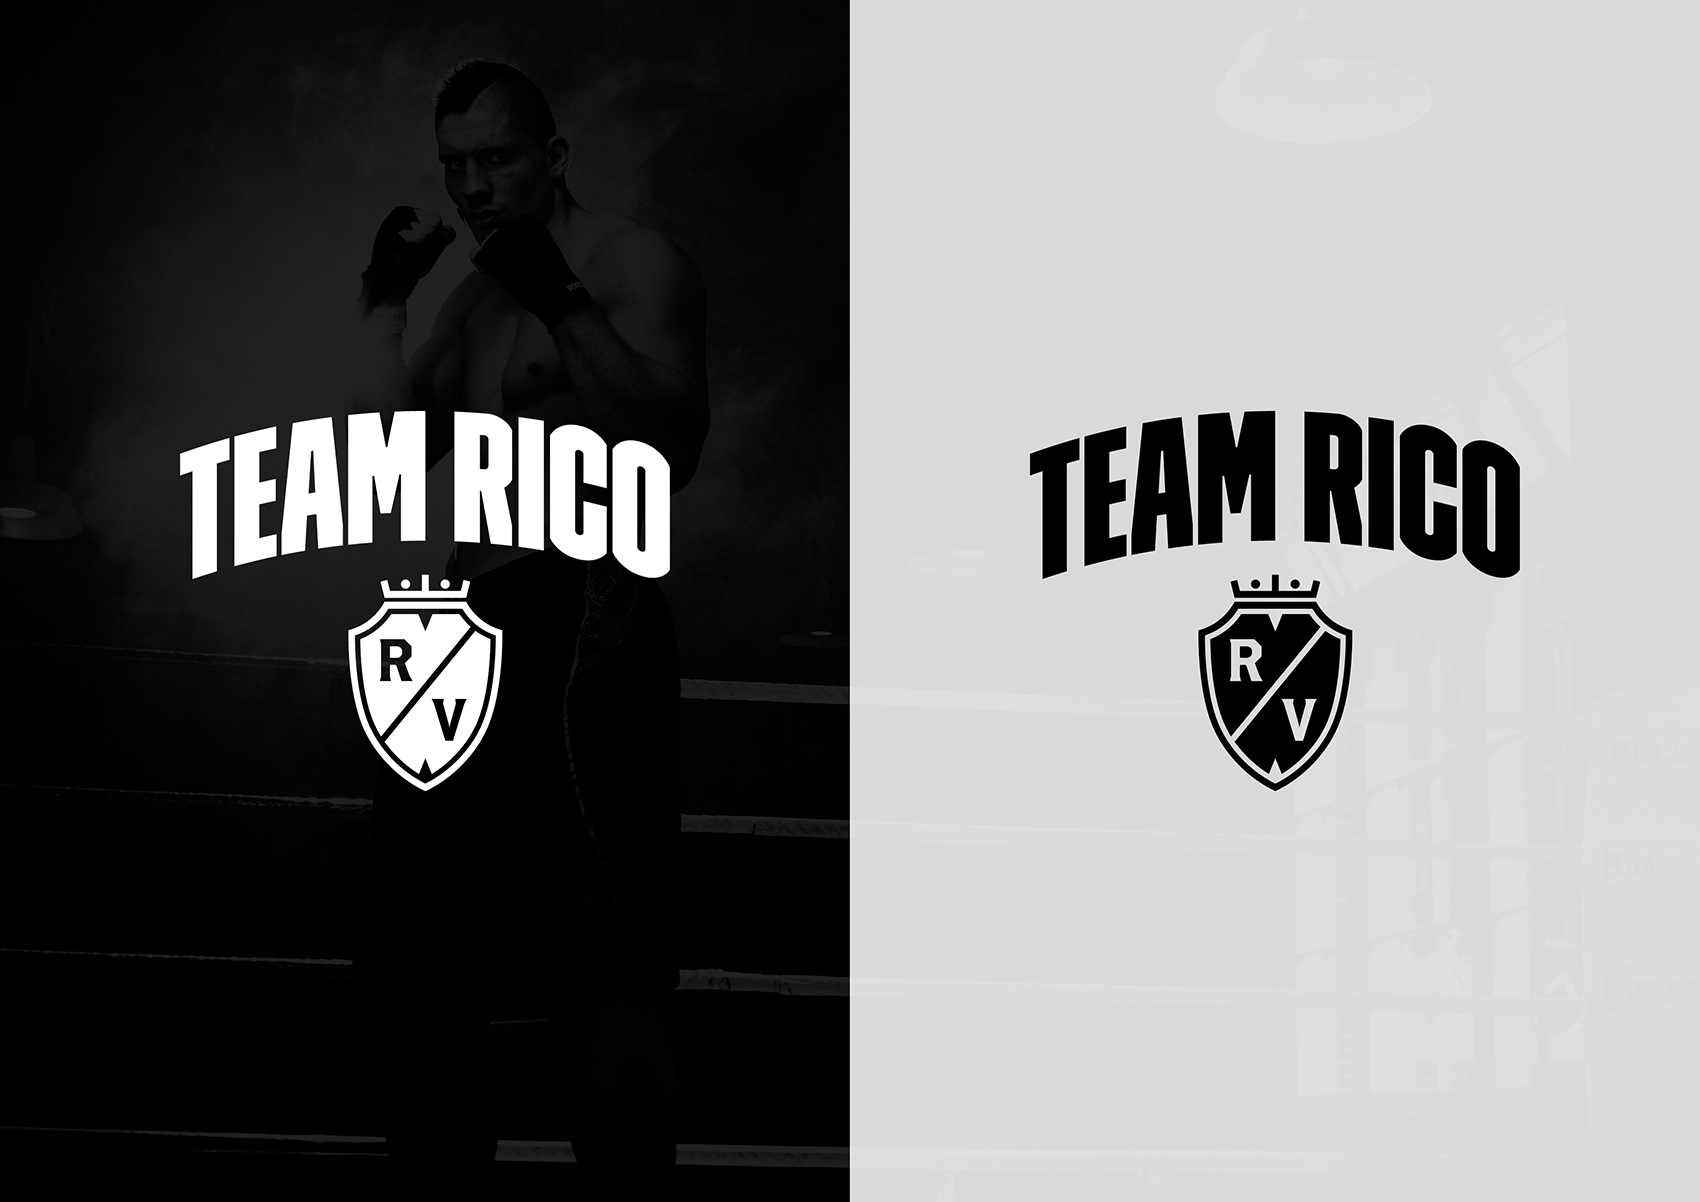 Team Rico